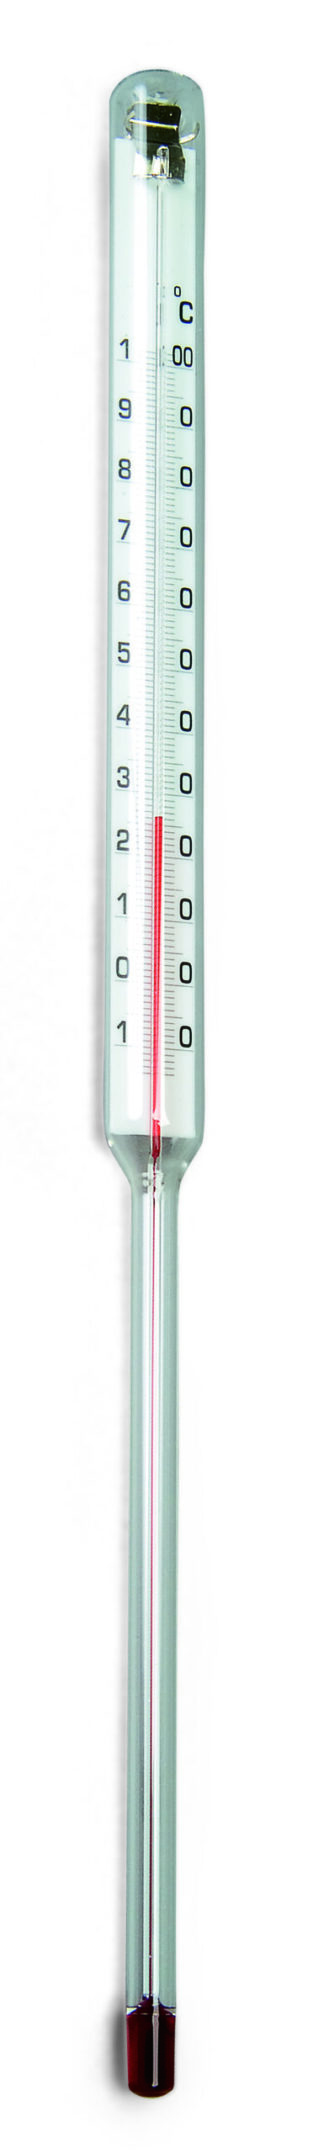 Rør-termometer -10 - 100 ° C-0